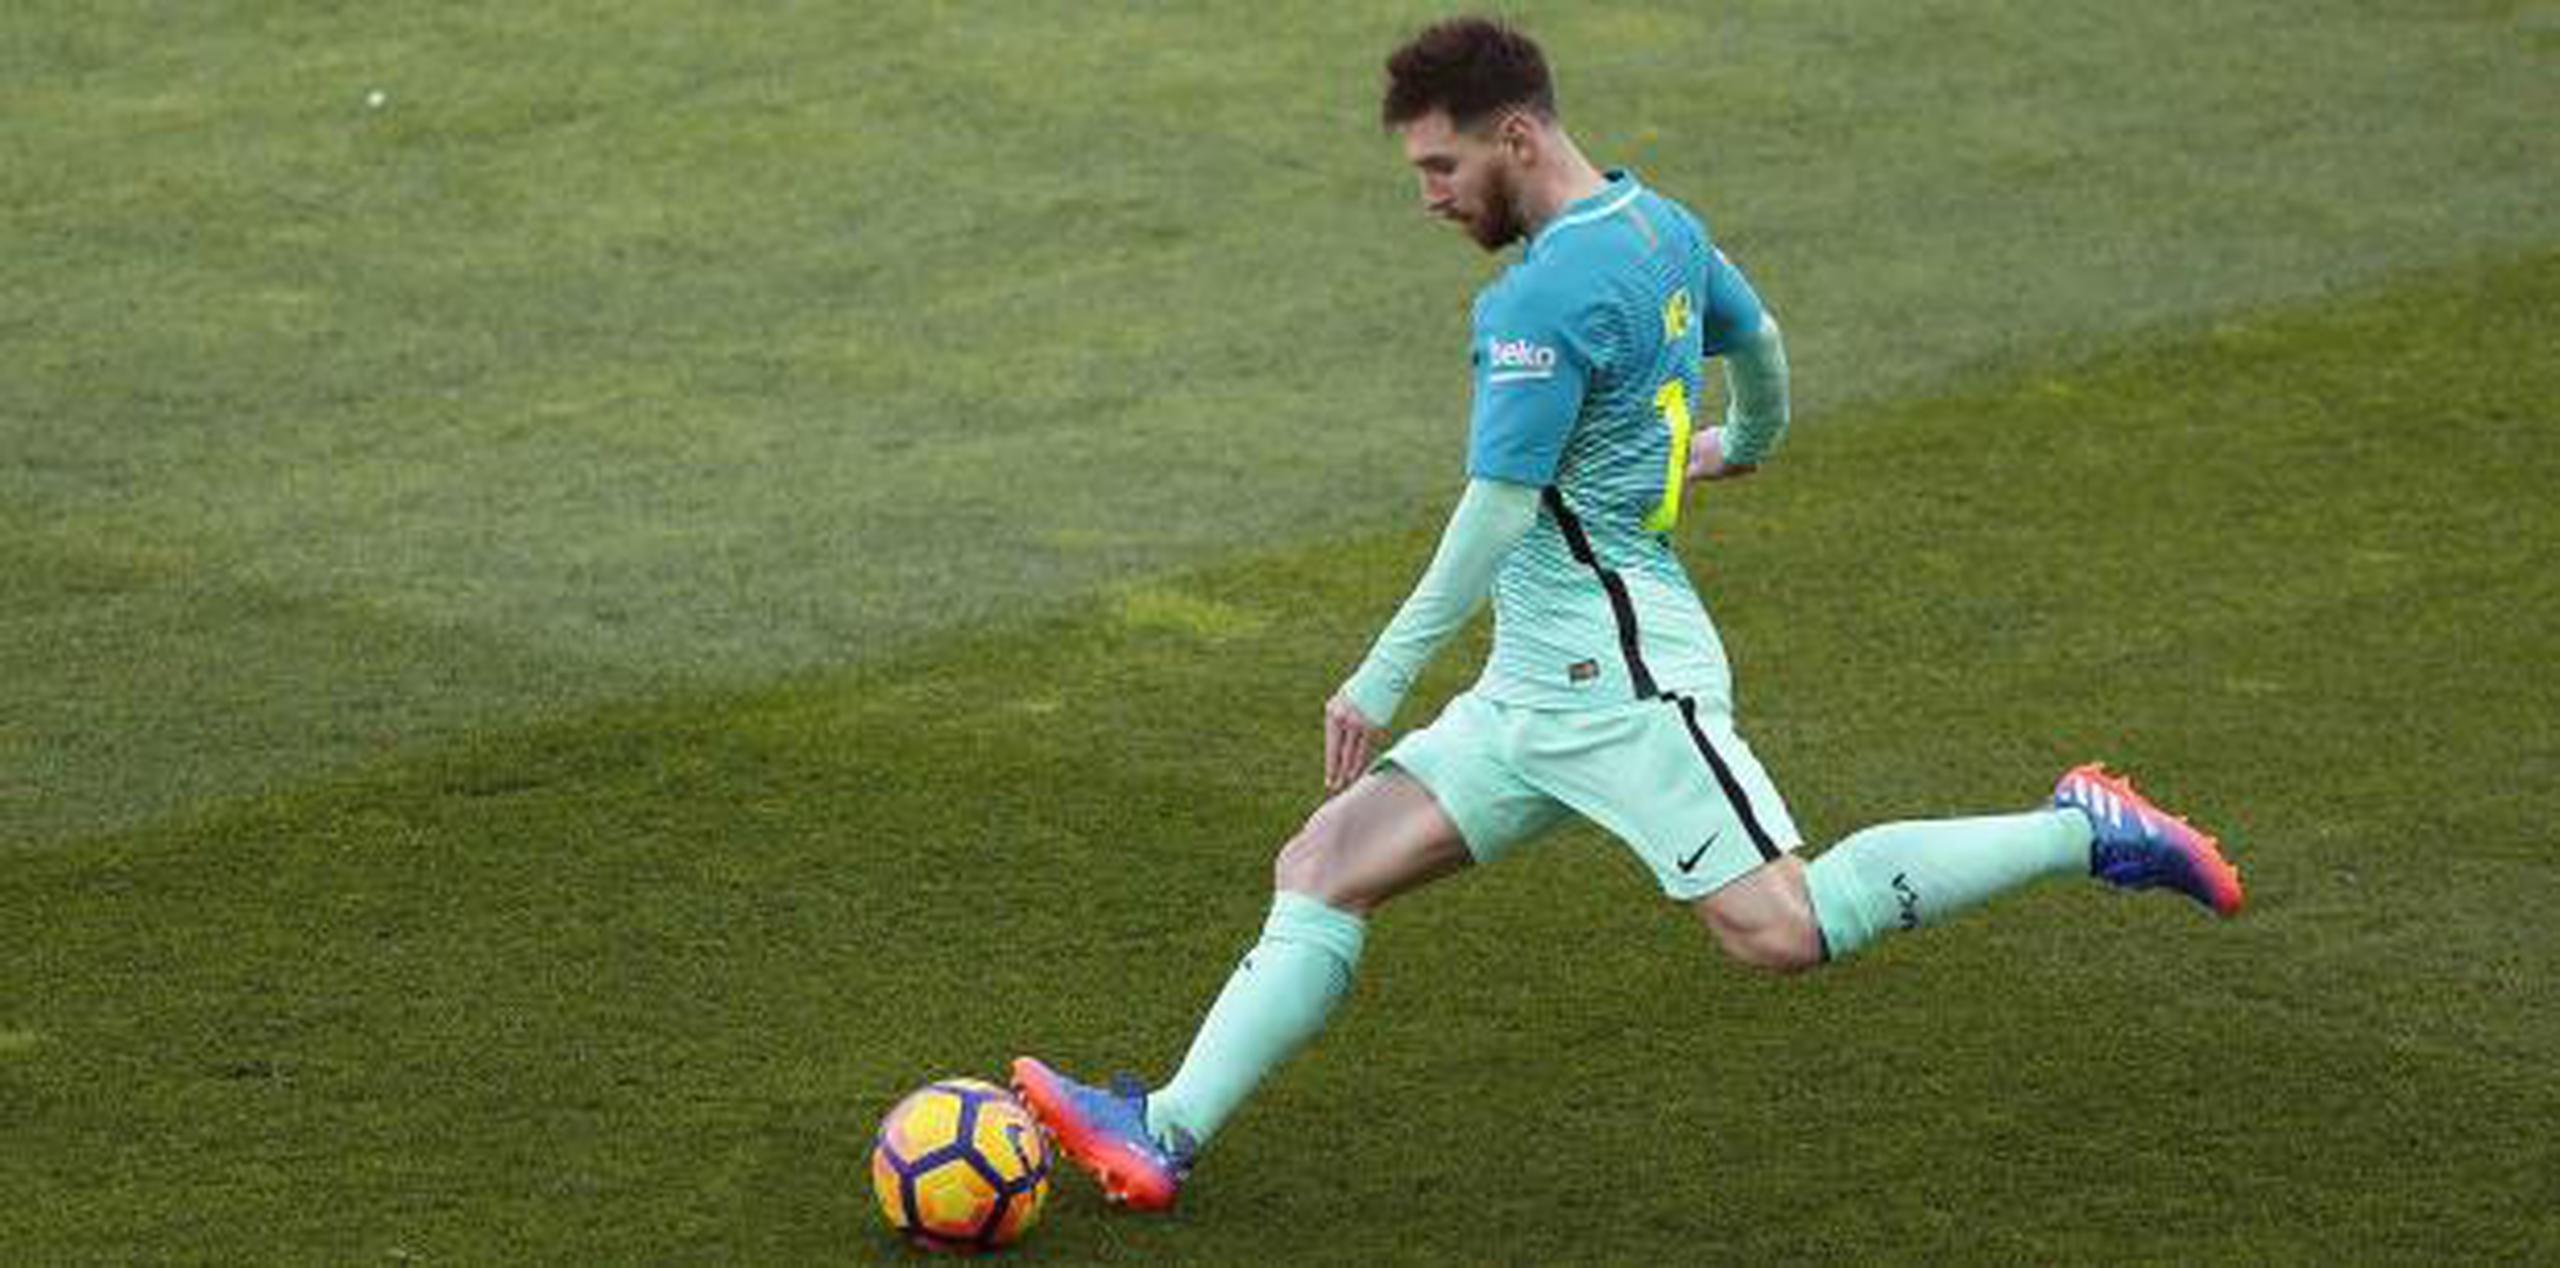 El astro argentino Lionel Messi se perdió la derrota por 1-0 contra el Athletic Bilbao el viernes en el arranque de la liga. (AP)